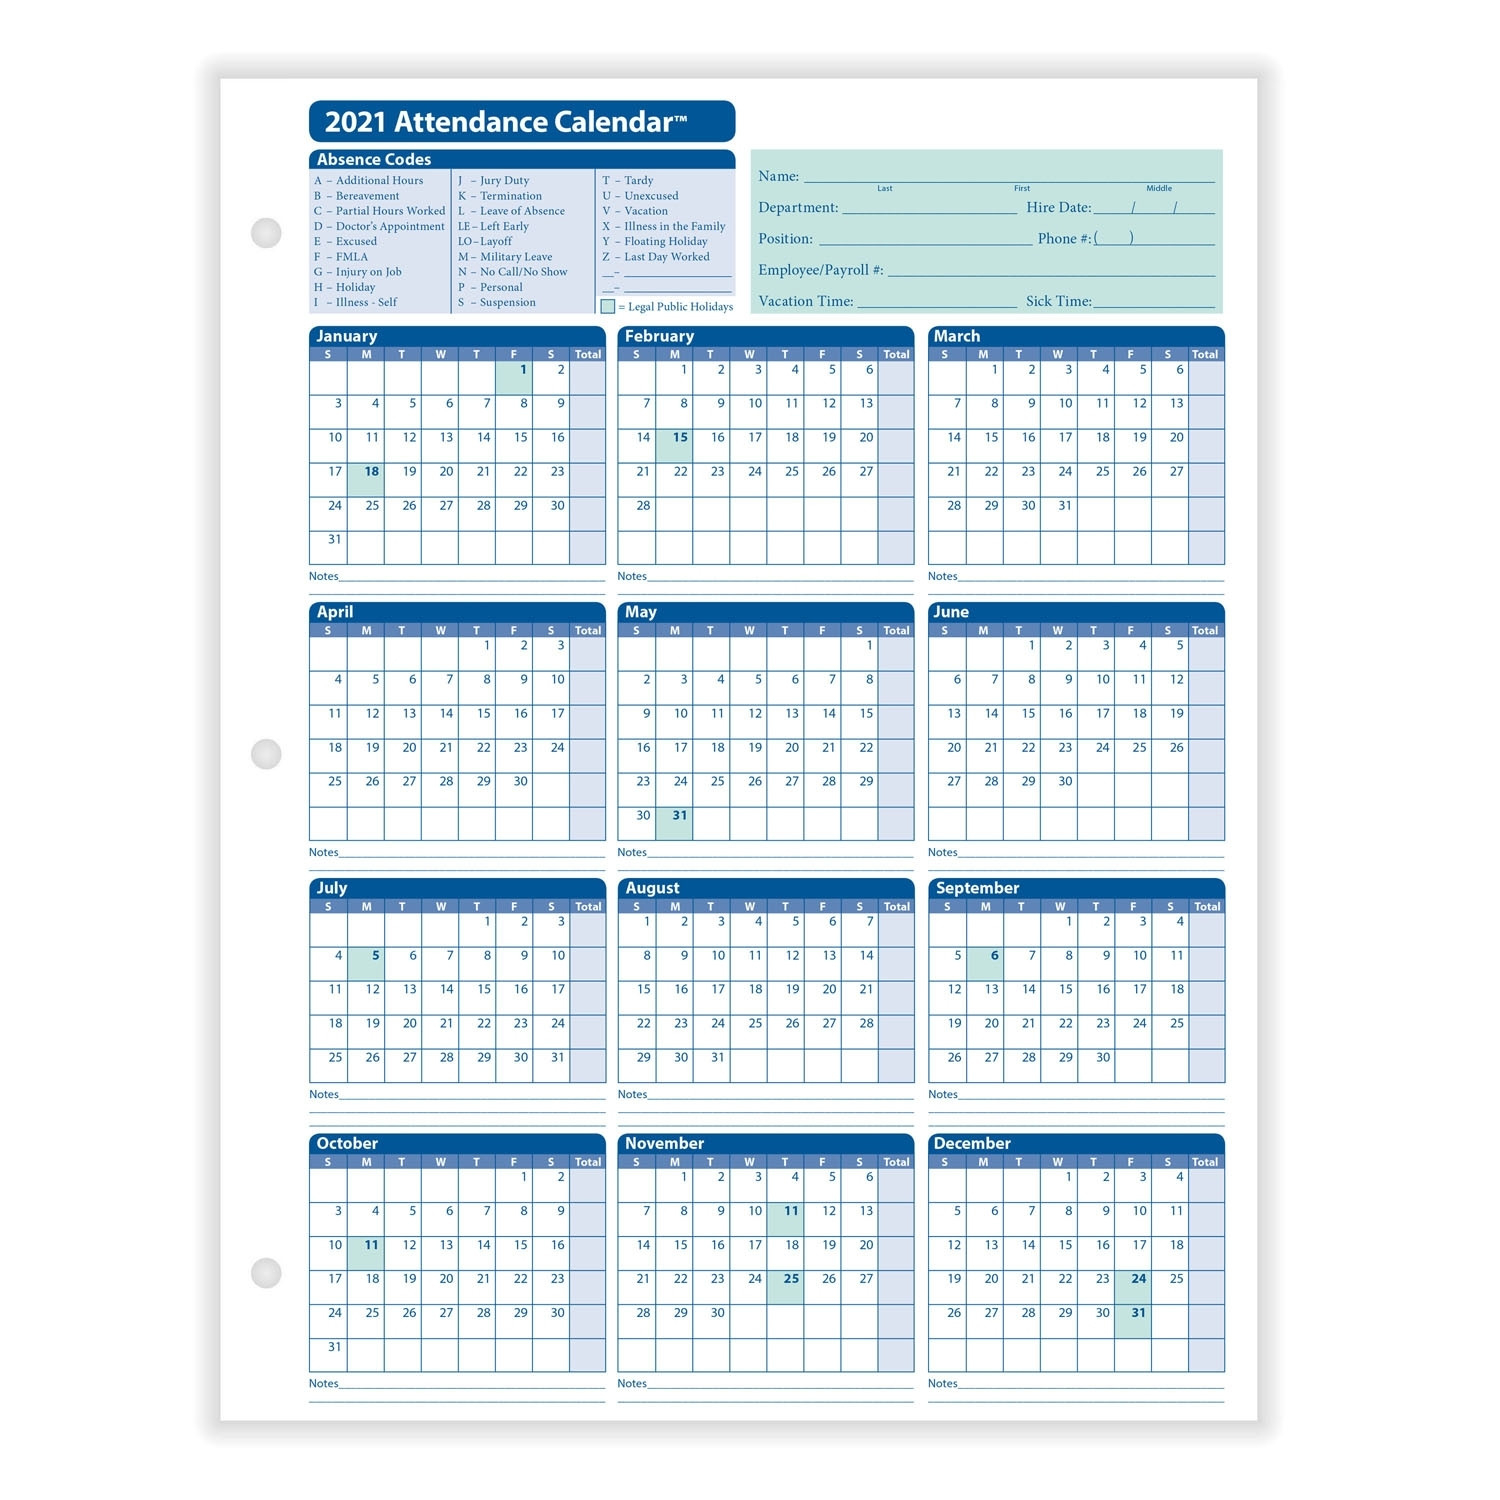 Printable Employee Vacation Calendar 2021 | Calendar-2021 Employee Vacation Calendar Excel Template